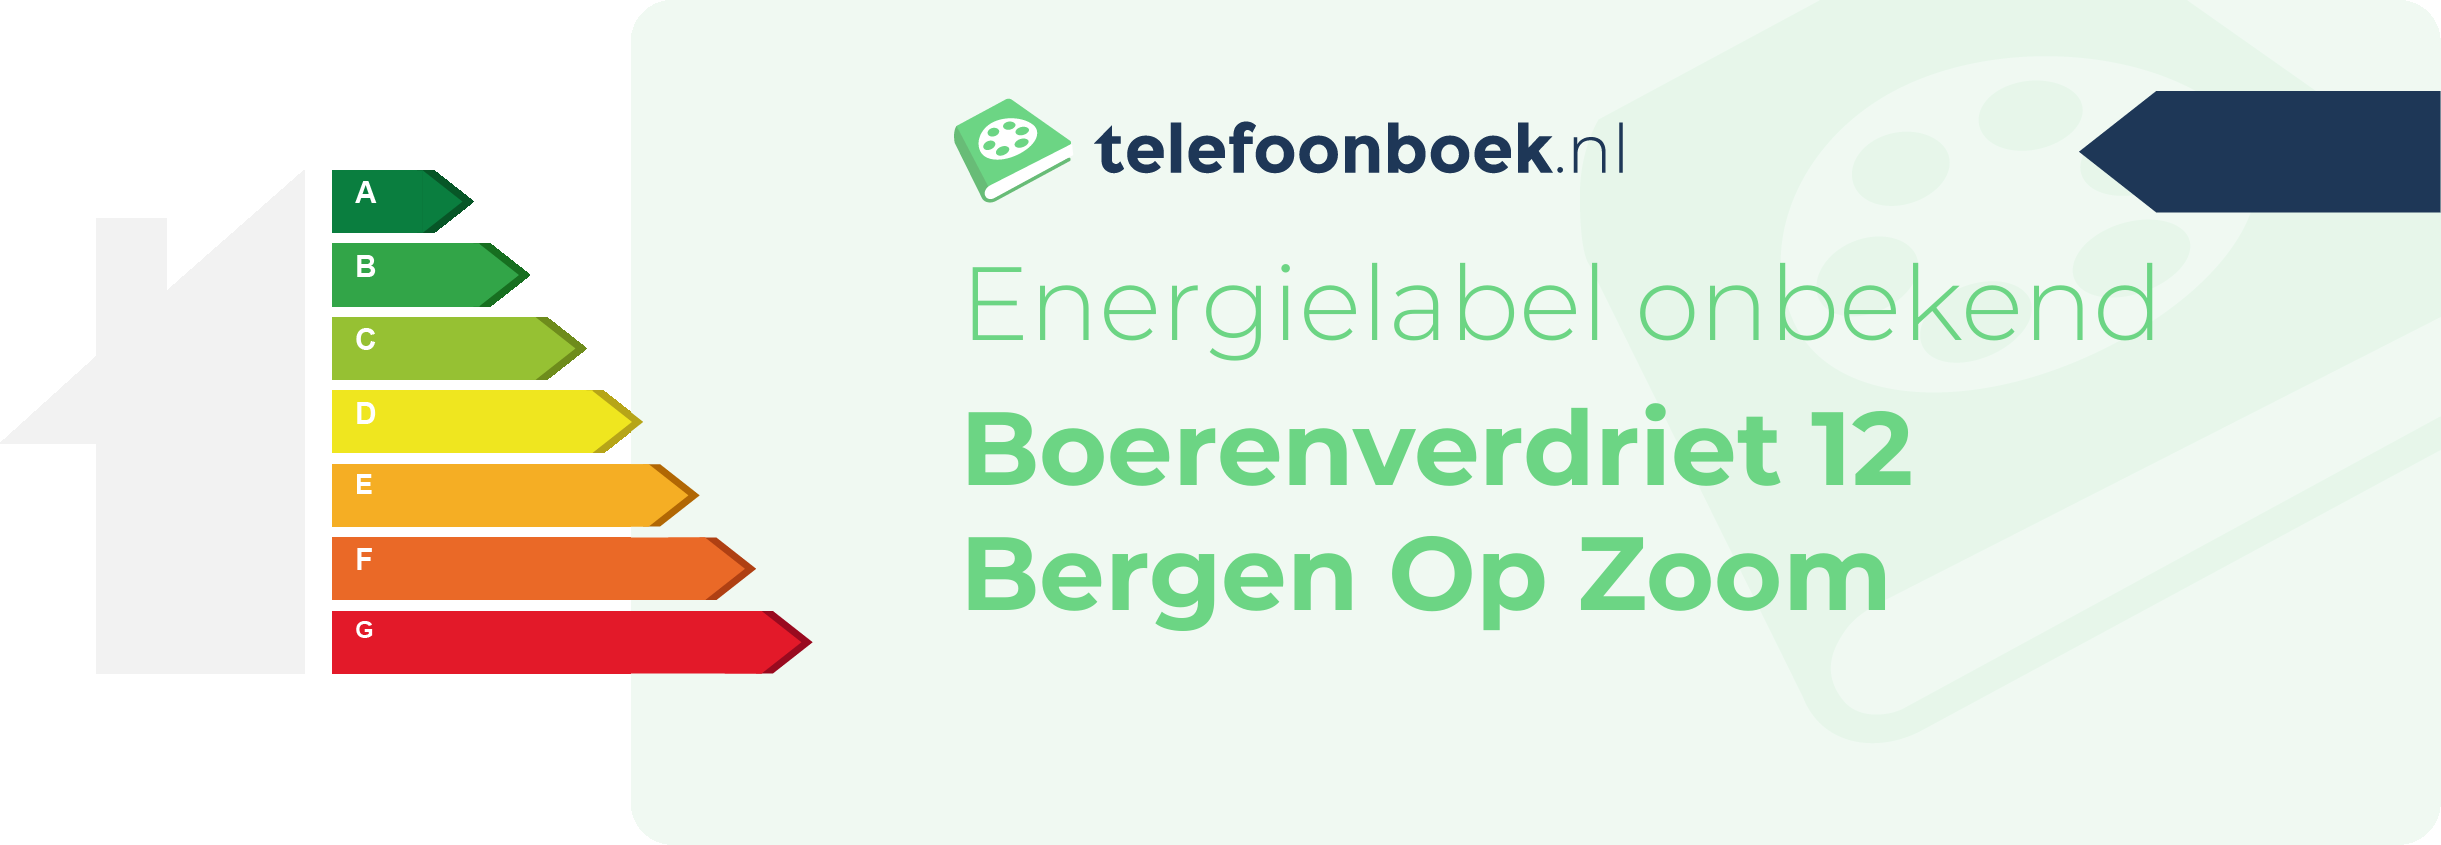 Energielabel Boerenverdriet 12 Bergen Op Zoom